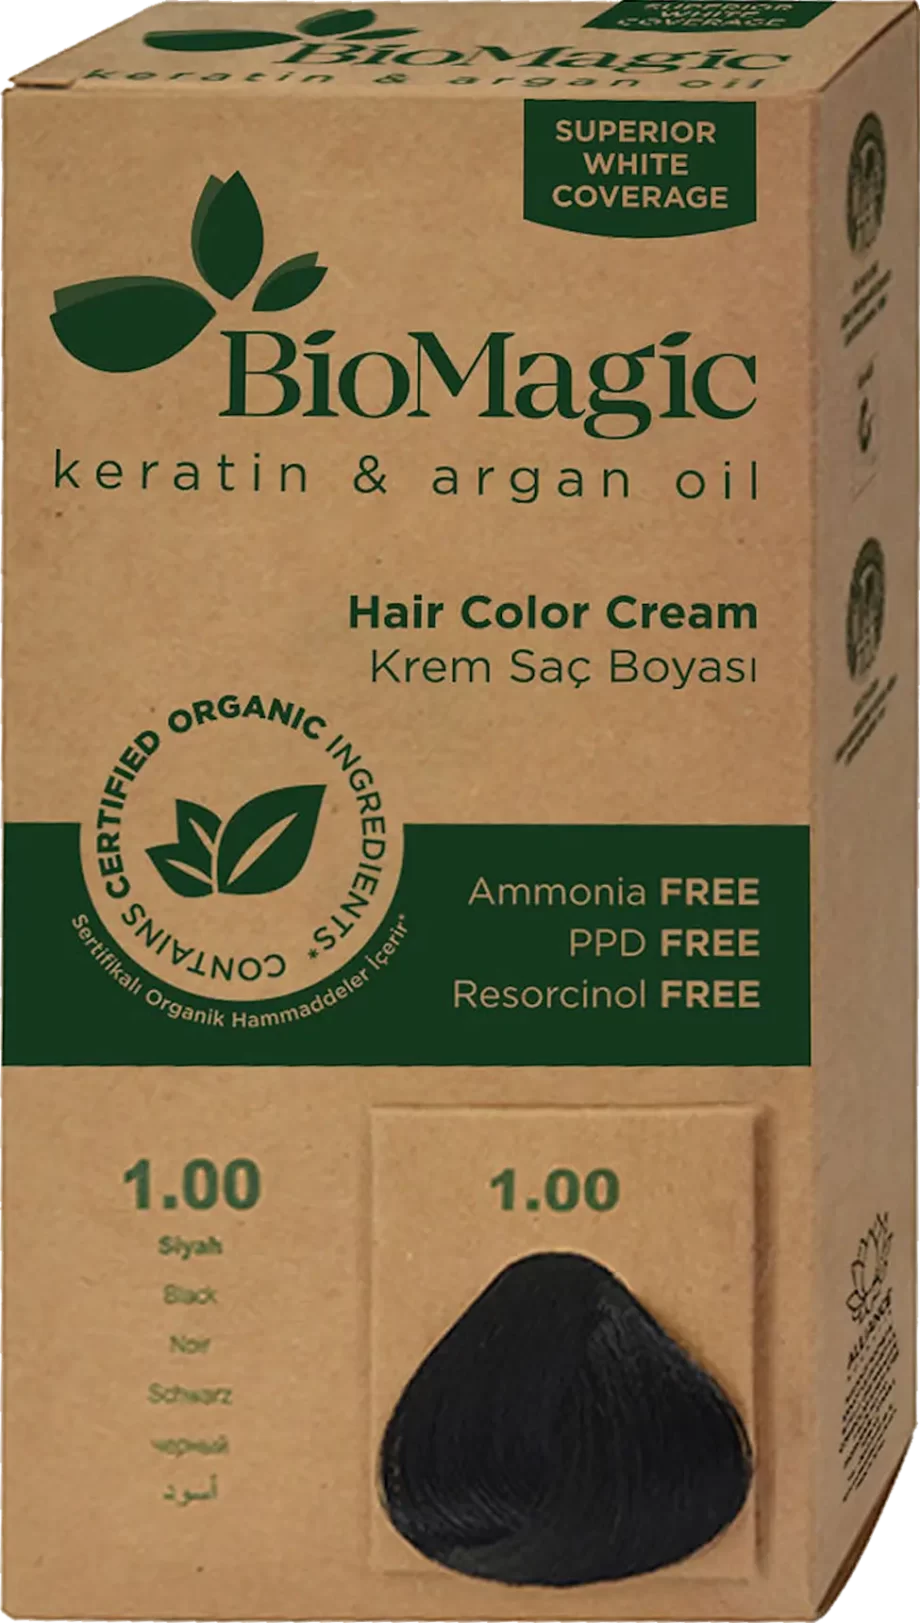 biomagic 1.00 black permanent hair color cream